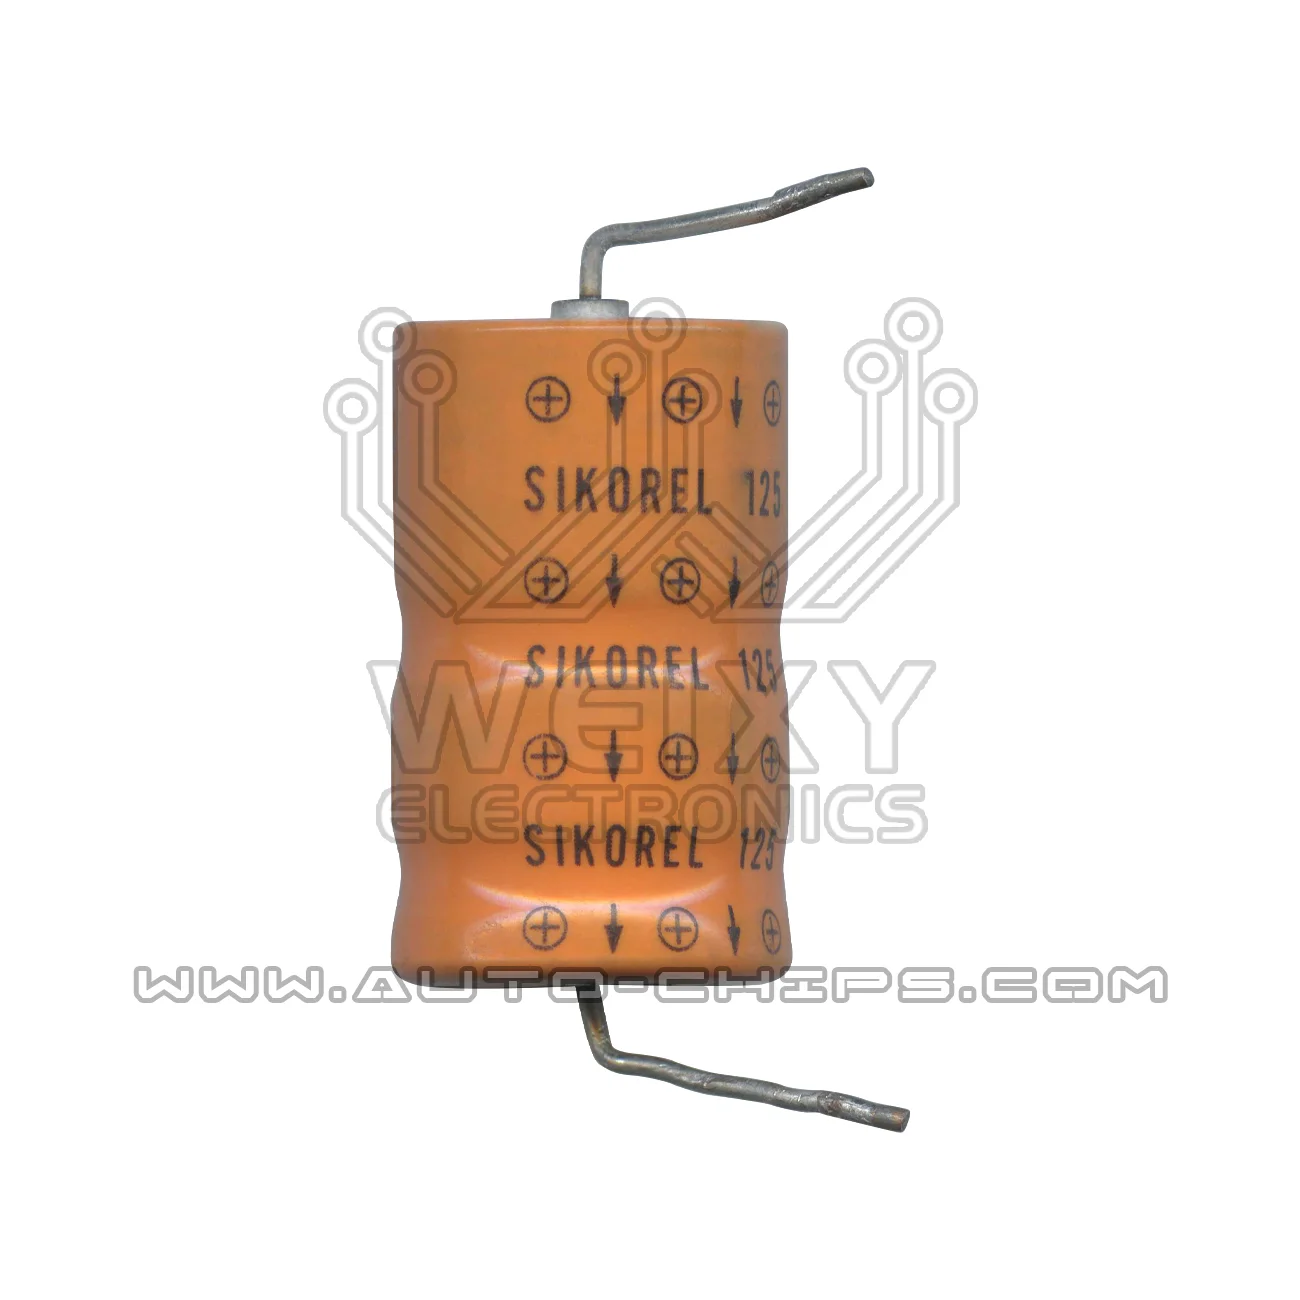 Конденсатор EPCOS SIK0REL 470 мкф 75 В B41684-S0477-Q1 используется для автомобильного ЭБУ